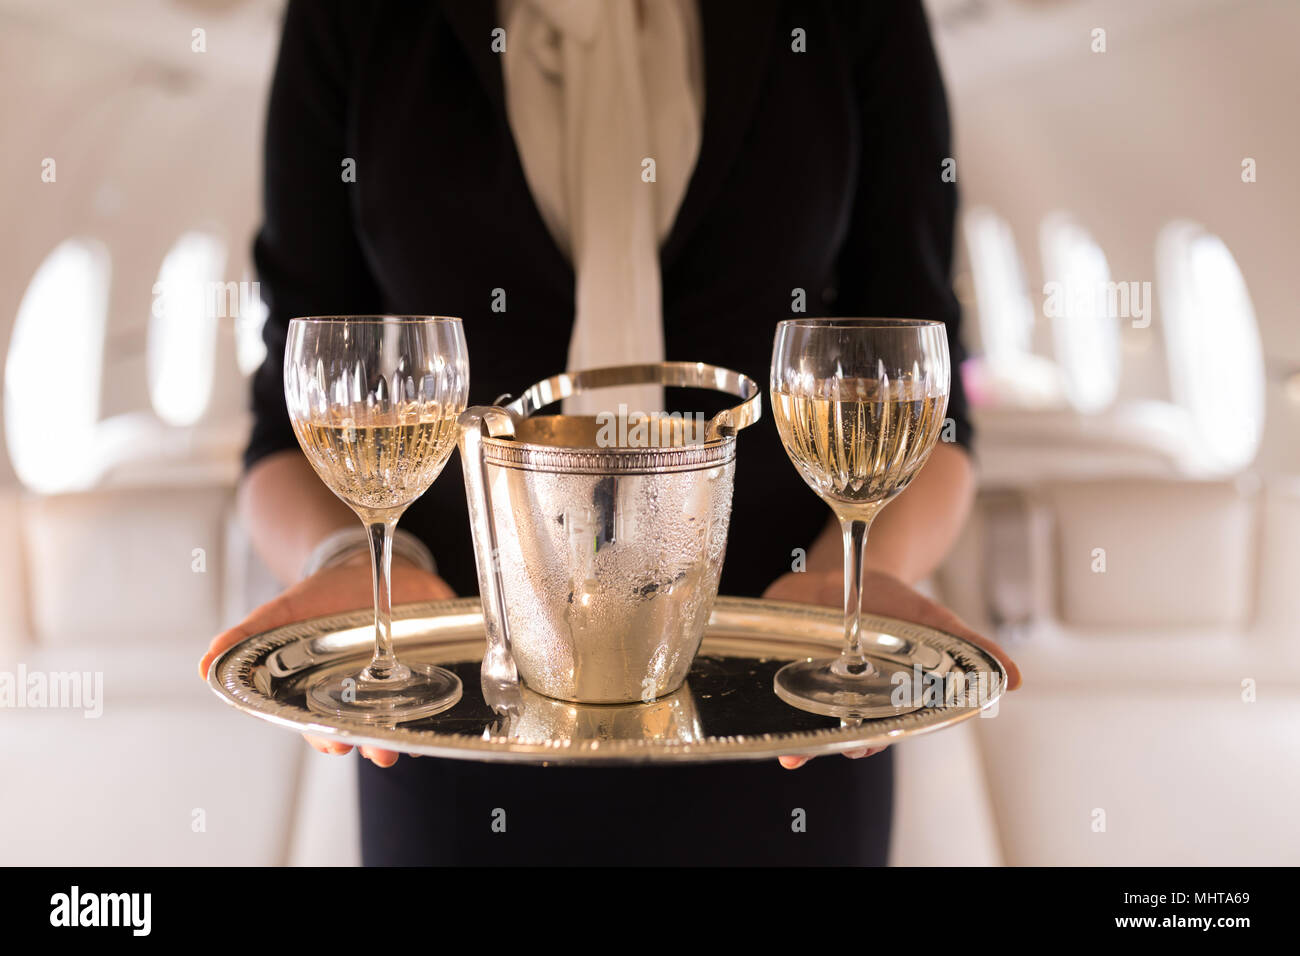 Agent de bord servant verres de champagne en jet privé Banque D'Images